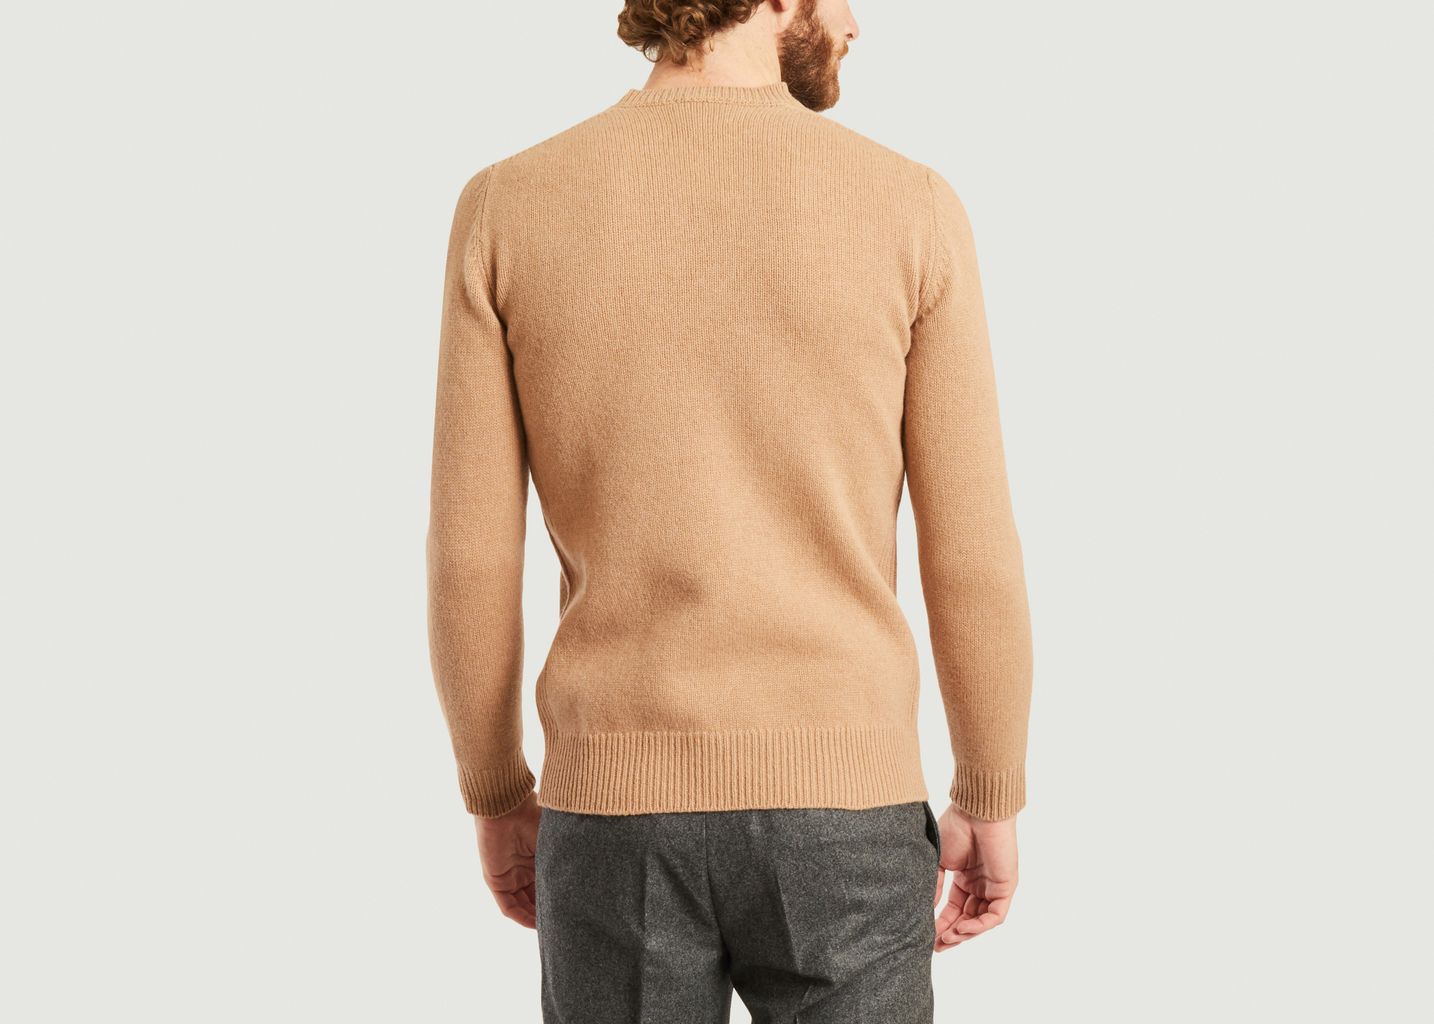 Wulf lambswool sweater - Harmony